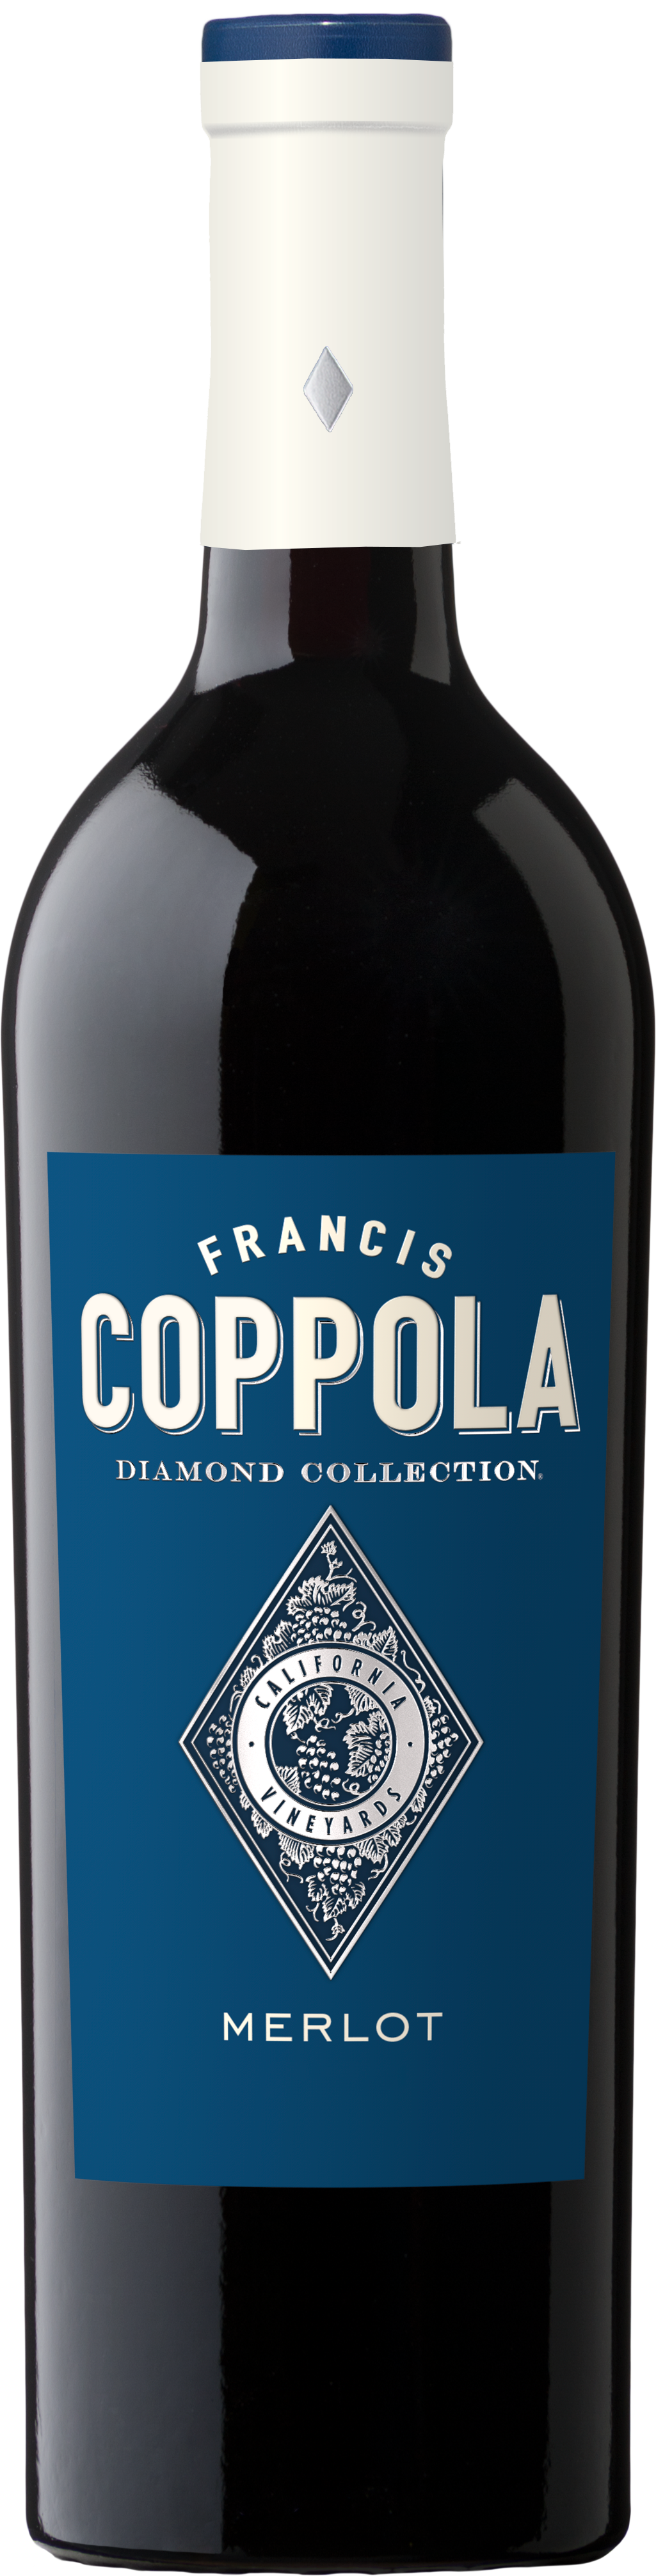 Coppola Diamond, Francis Coppola Diamond Collection Merlot